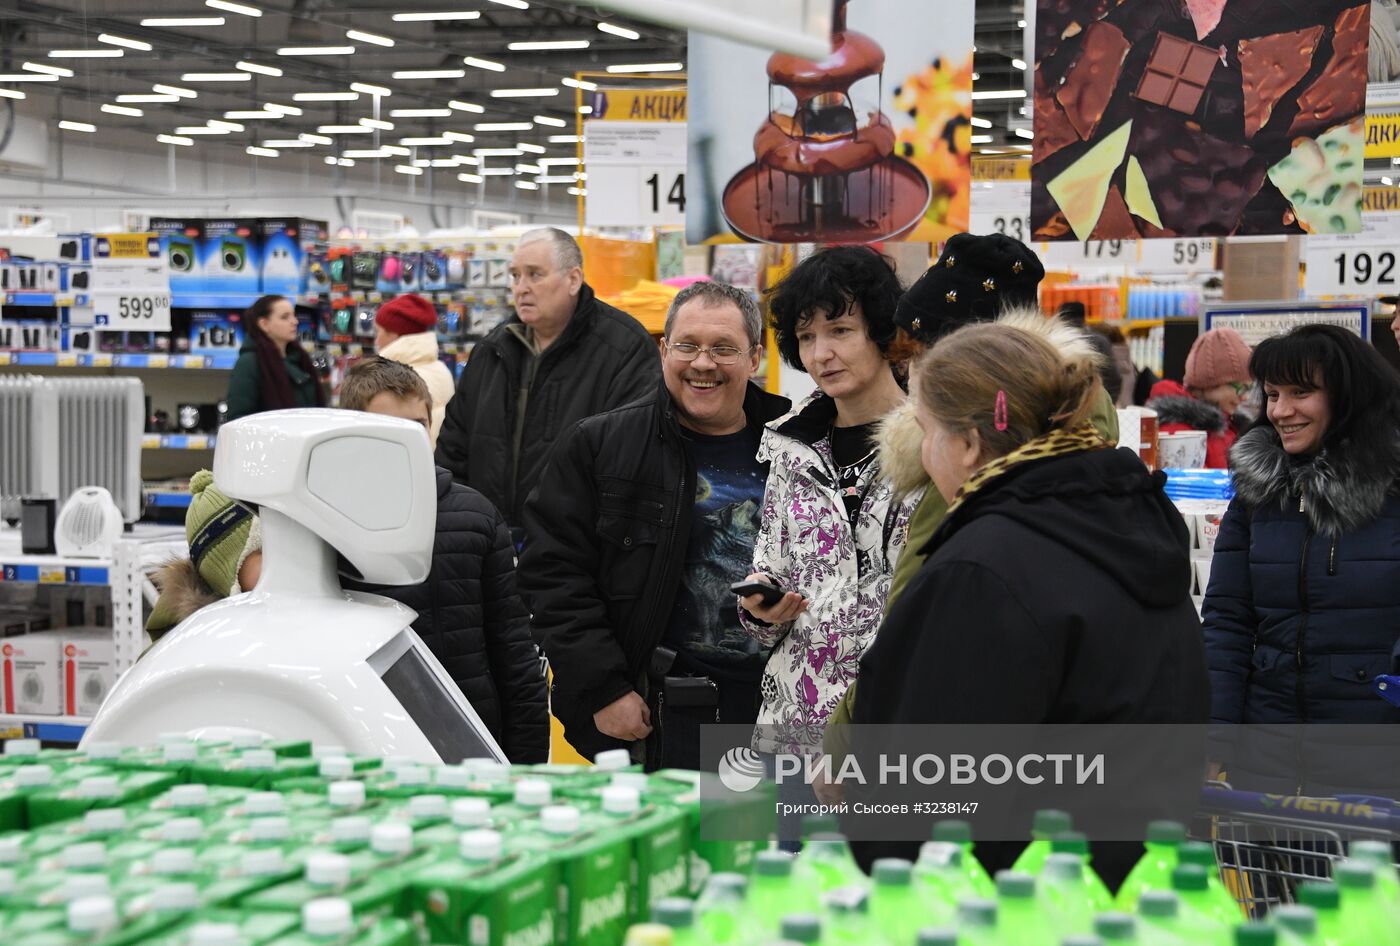 Роботы-консультанты появились в супермаркетах сети "Лента"